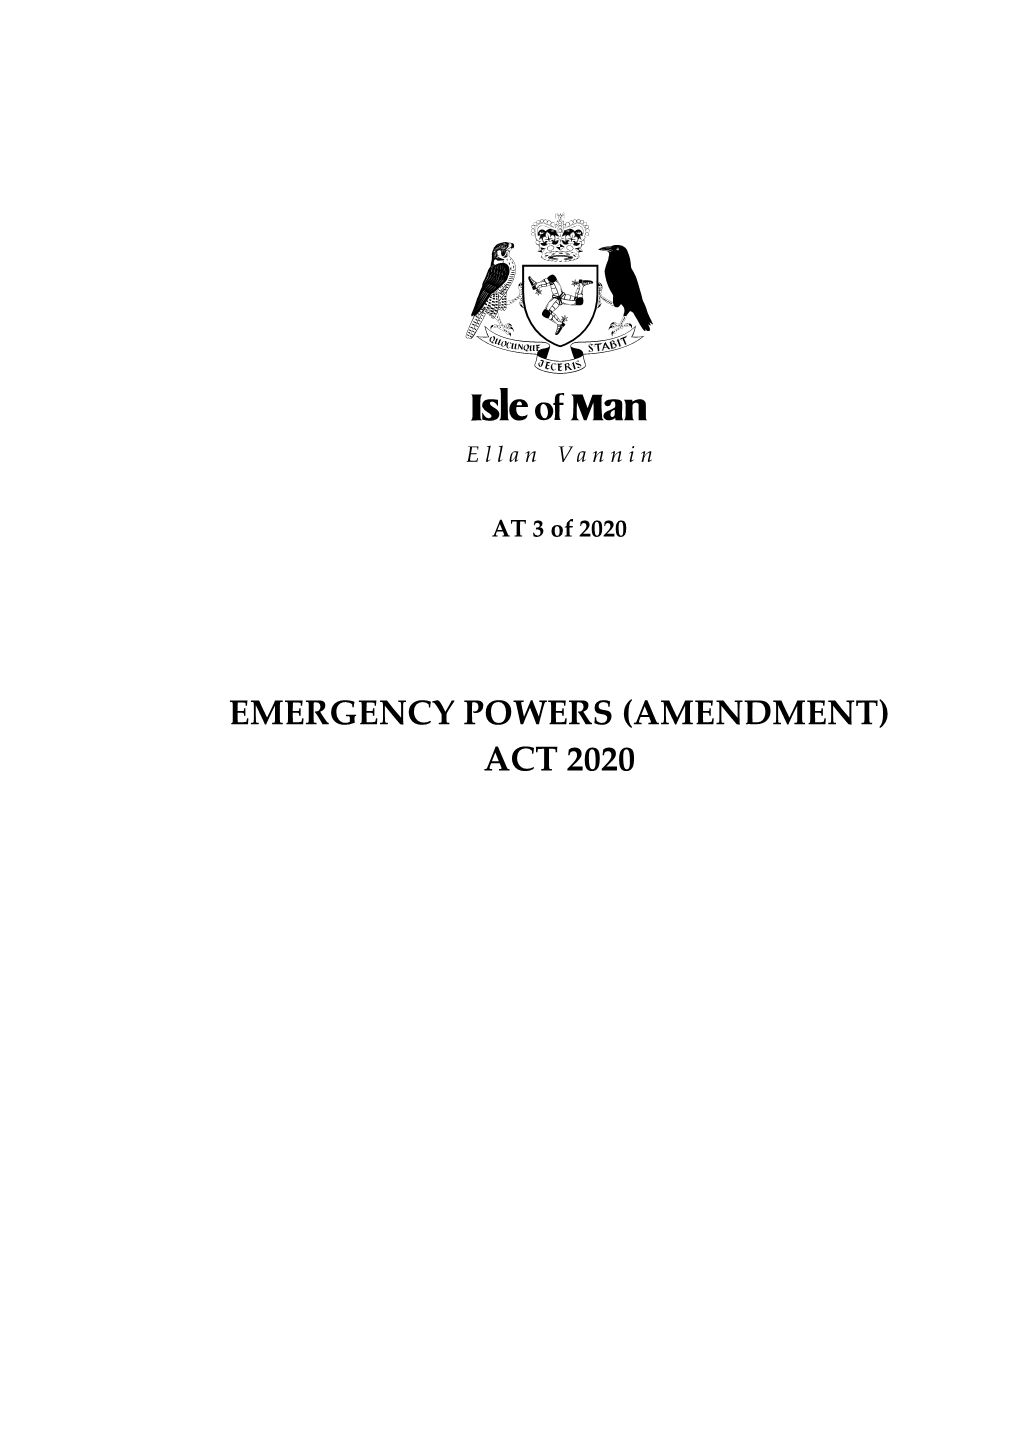 Emergency Powers (Amendment) Act 2020